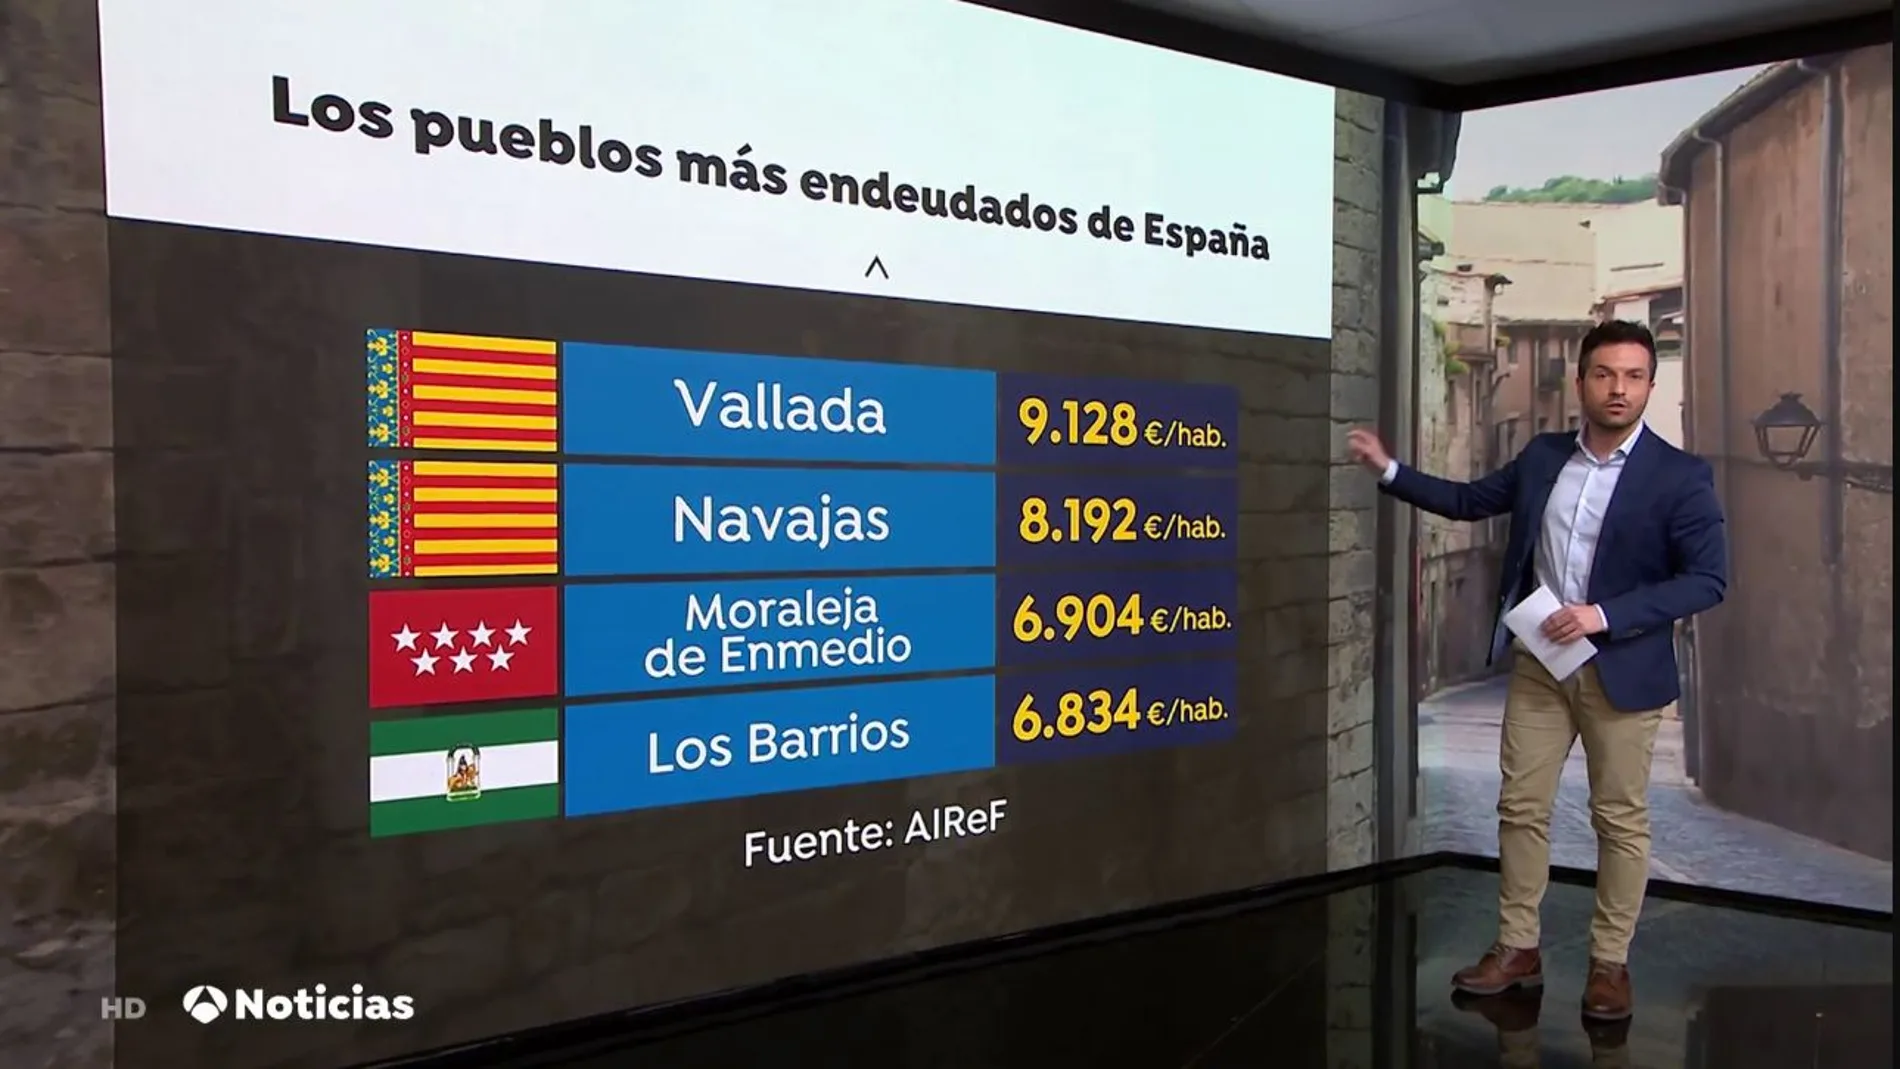 Los pueblos más endeudados de España